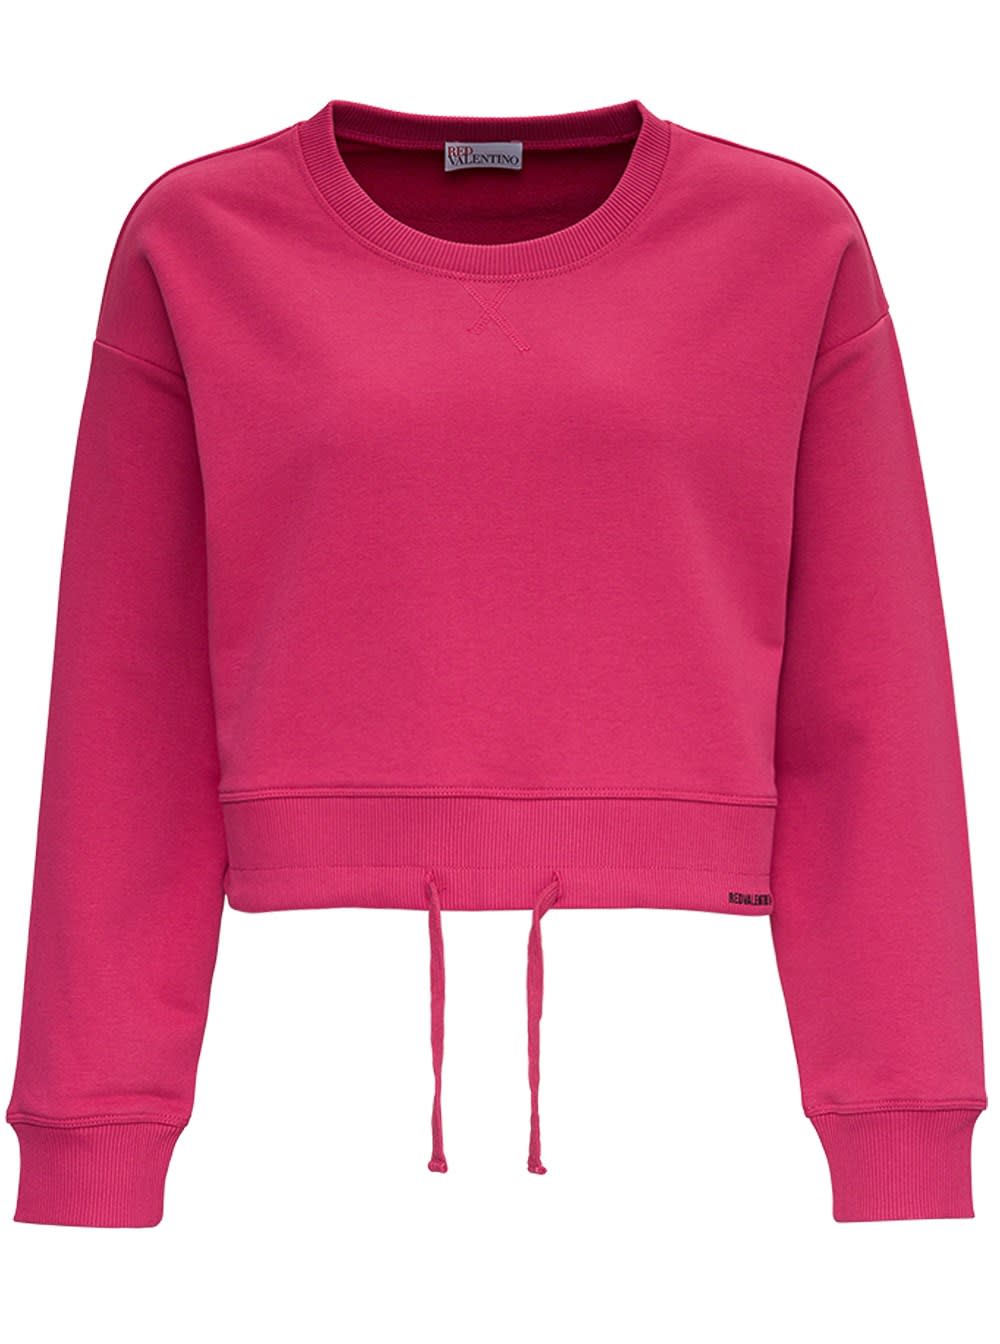 RED Valentino Cotton Crop Sweatshirt With Drawstring